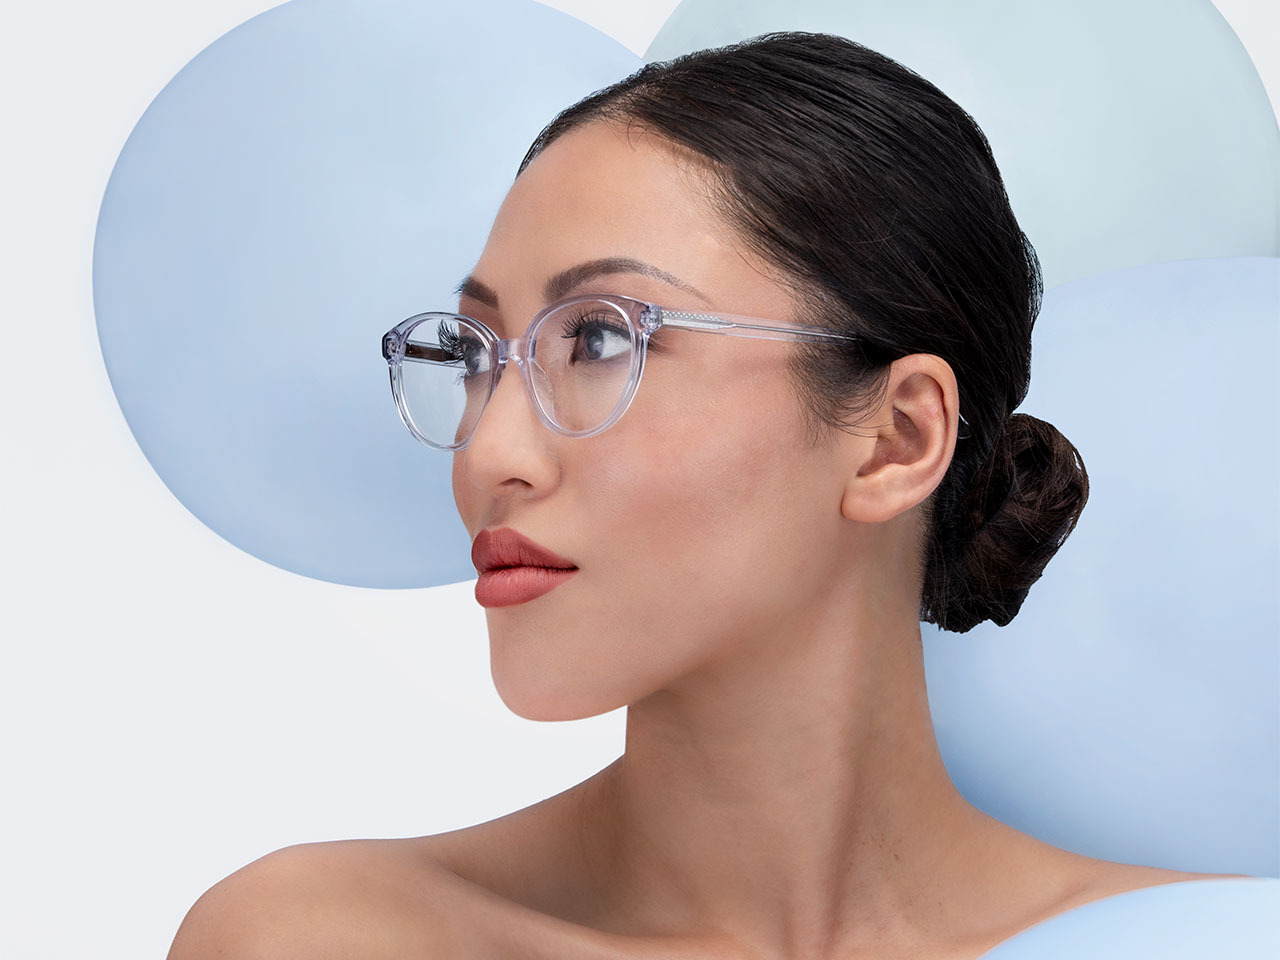 Купить очки маркет. Оптические очки. Очки с оптоволокном. Очки оптическая система. Частные фото женщин в оптических очках.